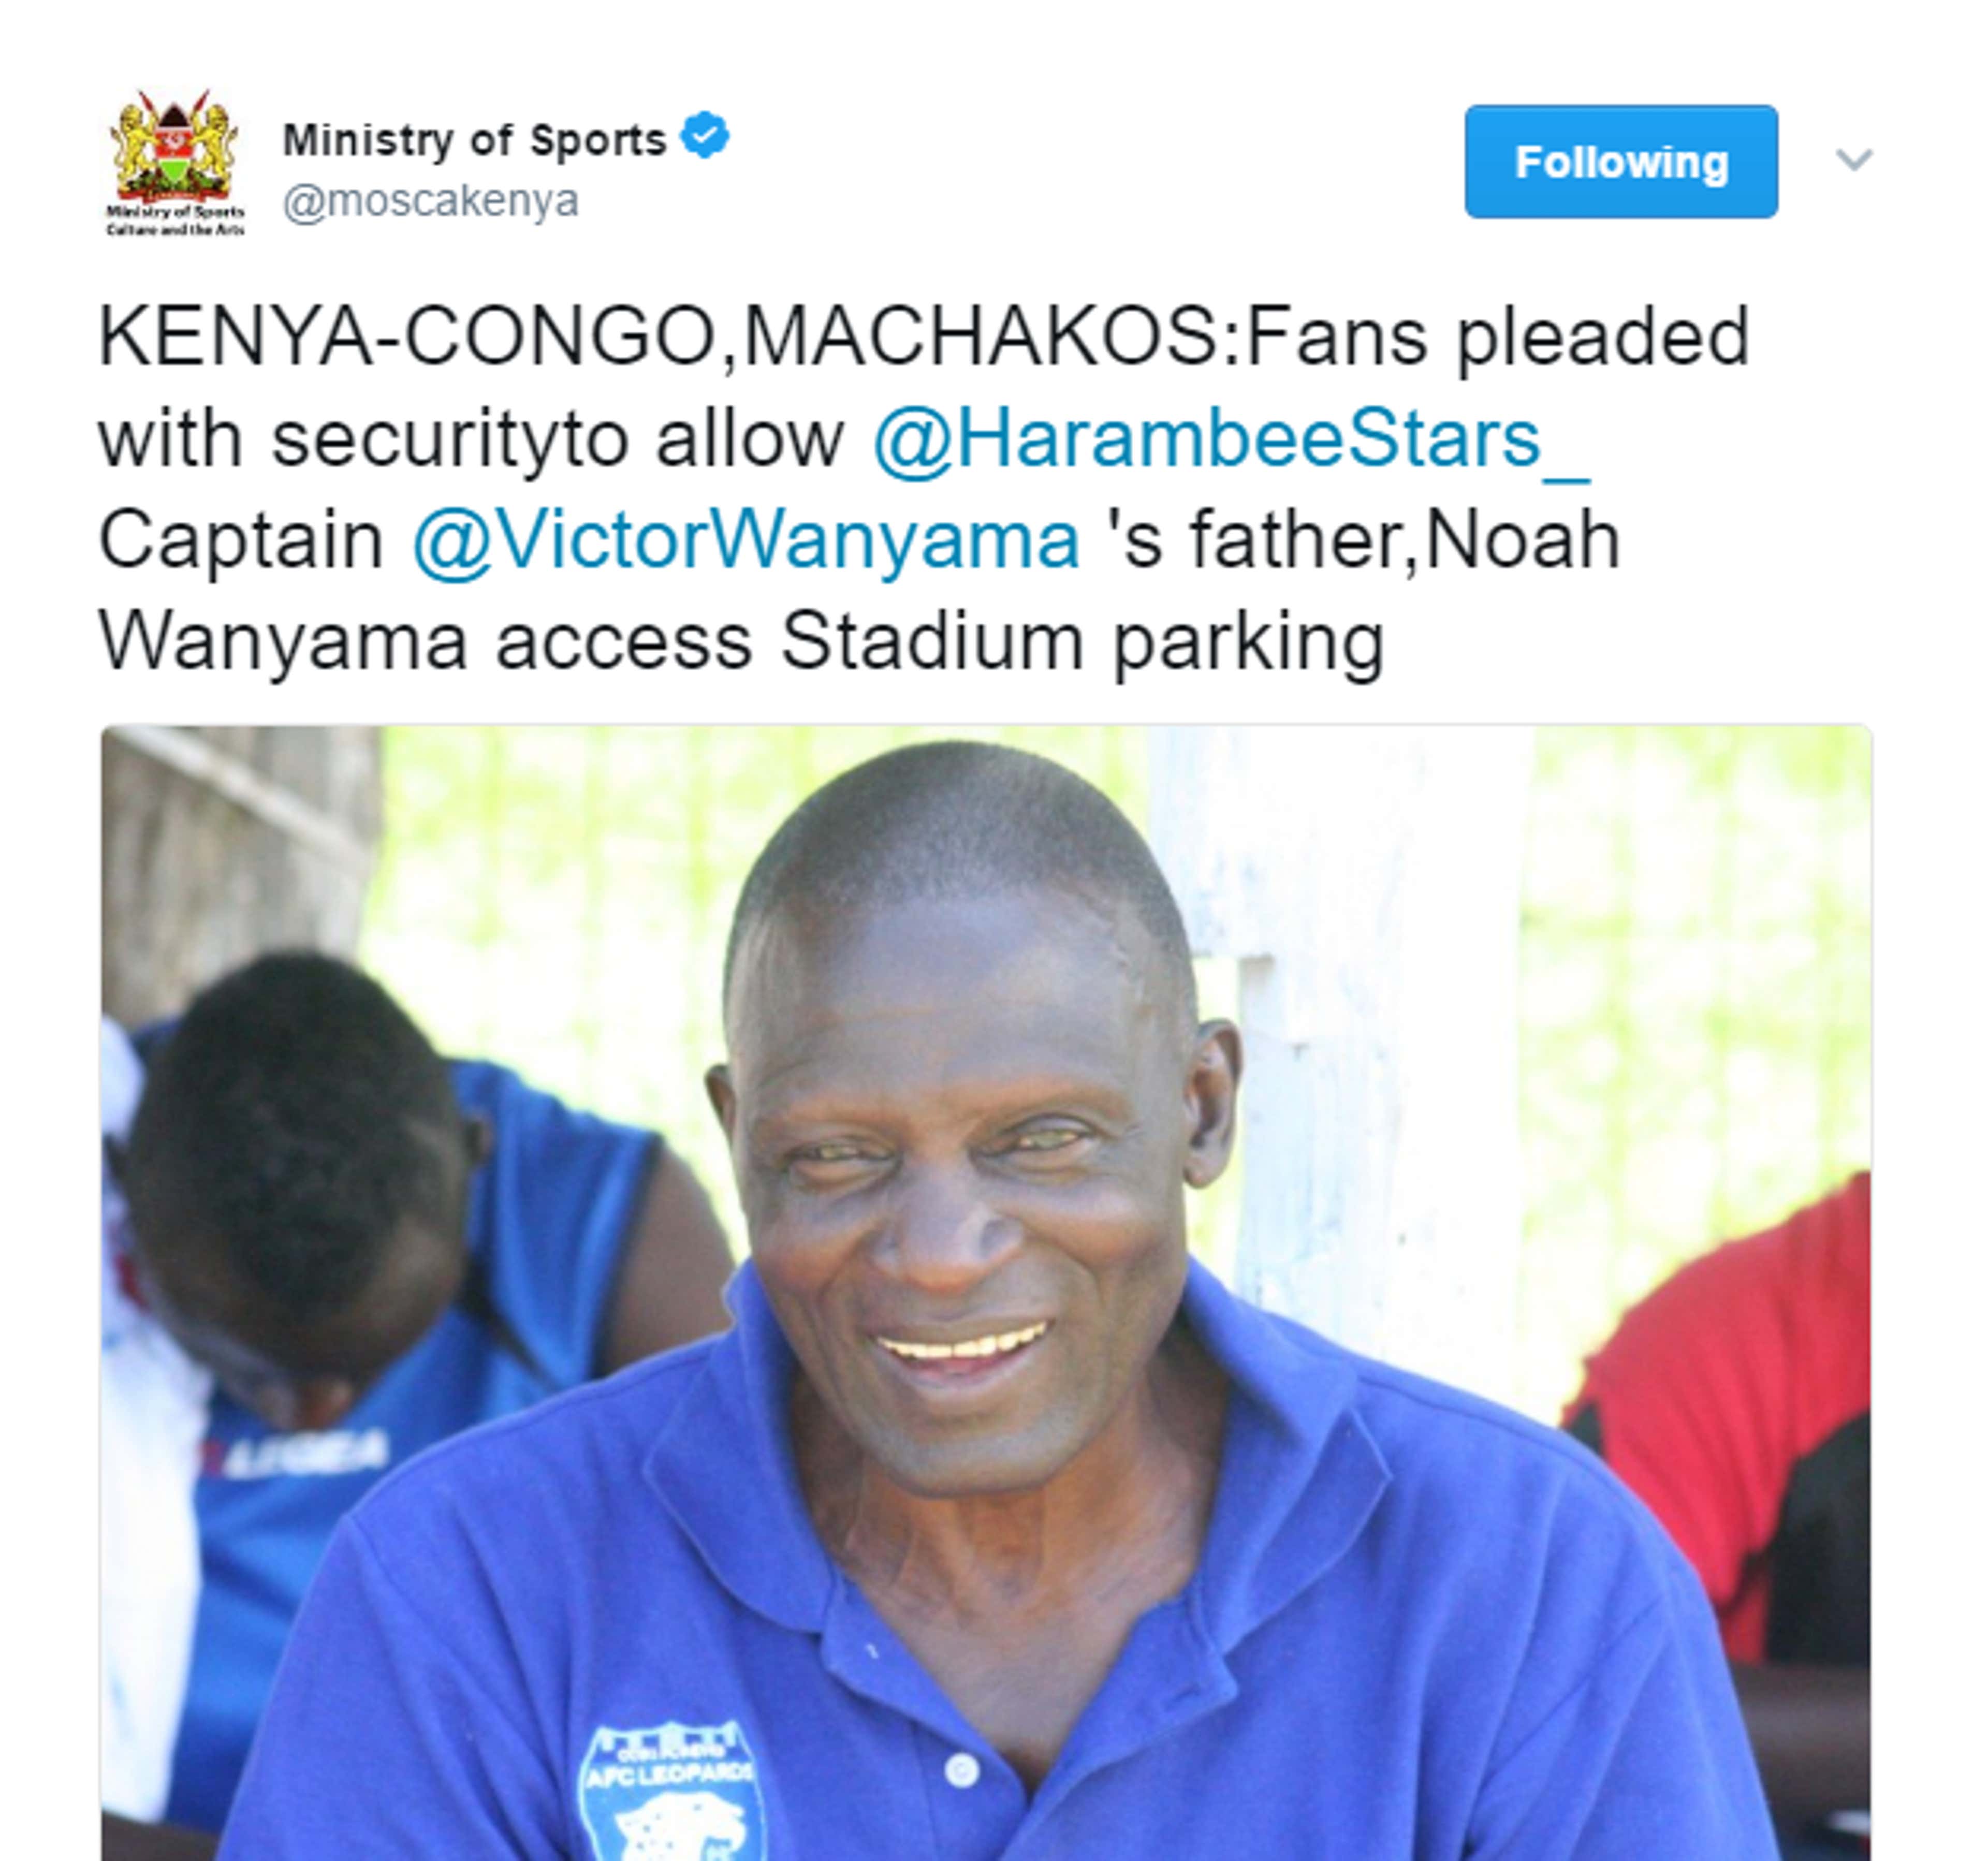 Tweet on Noah Wanyama